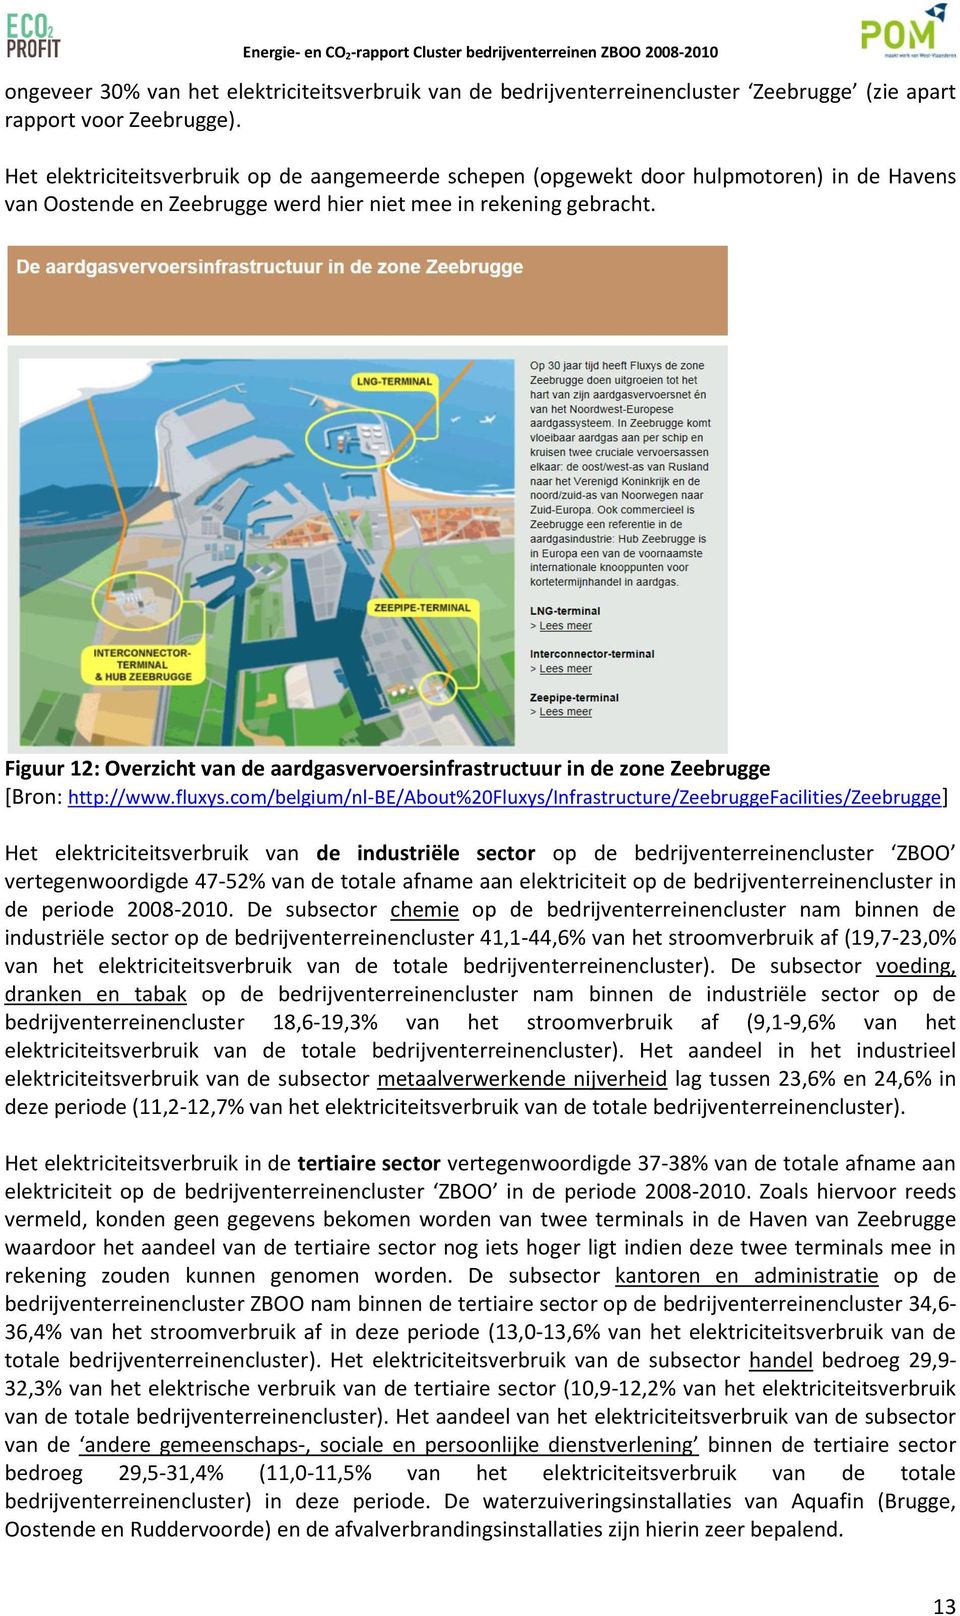 Figuur 12: Overzicht van de aardgasvervoersinfrastructuur in de zone Zeebrugge [Bron: http://www.fluys.